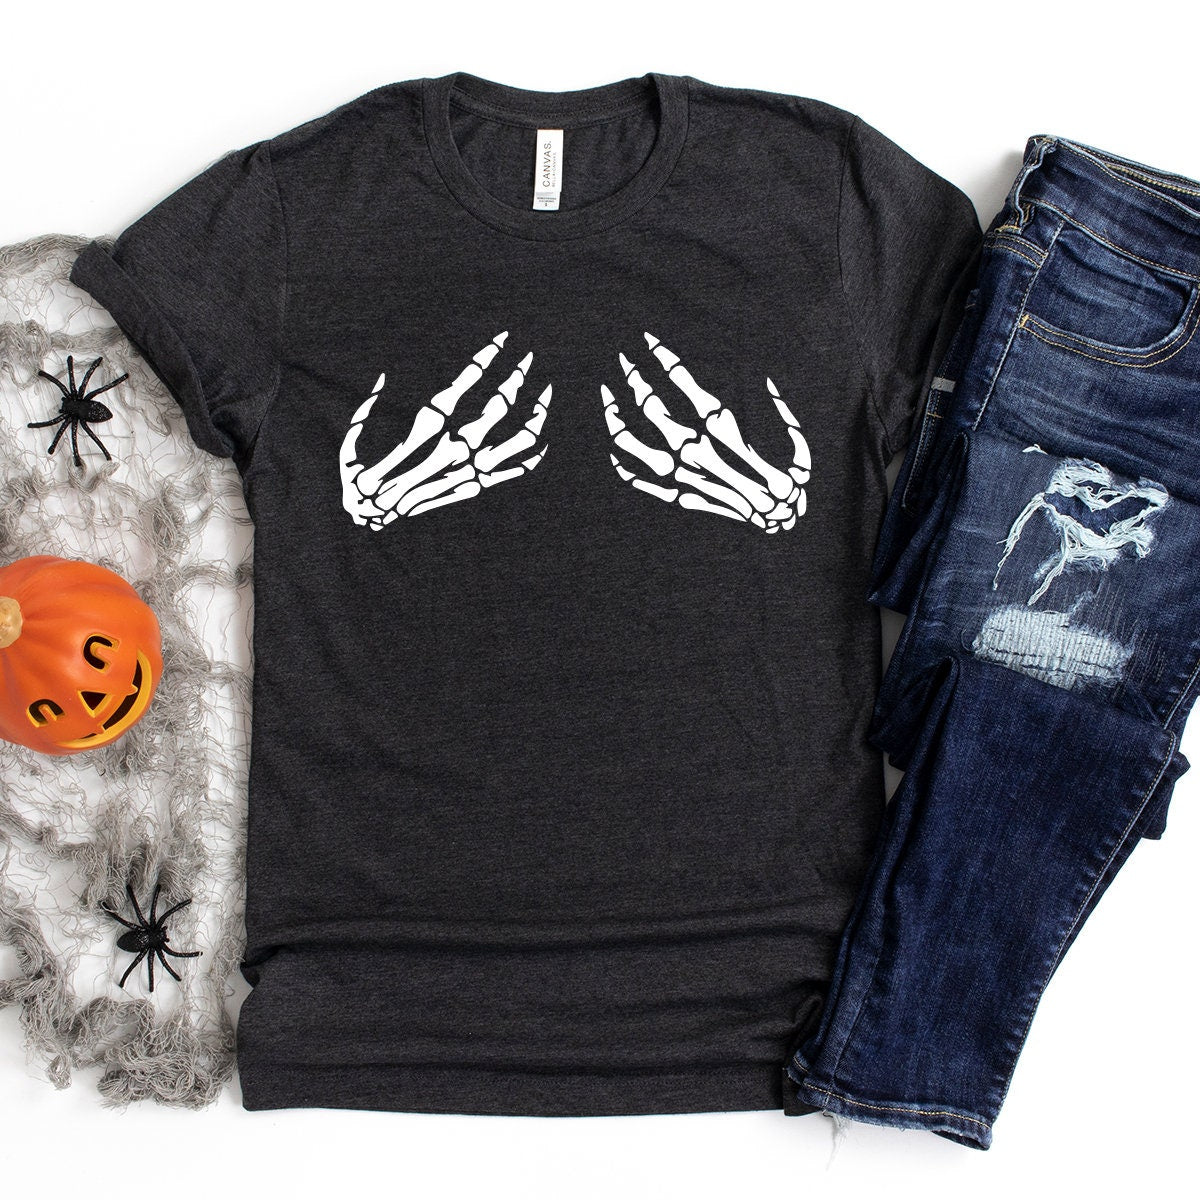 Skeleton Hand T-Shirt, Hand Bra Tshirt, Funny Halloween Shirt, Skeleton Boob Hand Shirt, Halloween Party Shirt, Skeleton Hand Bra Shirt - Fastdeliverytees.com